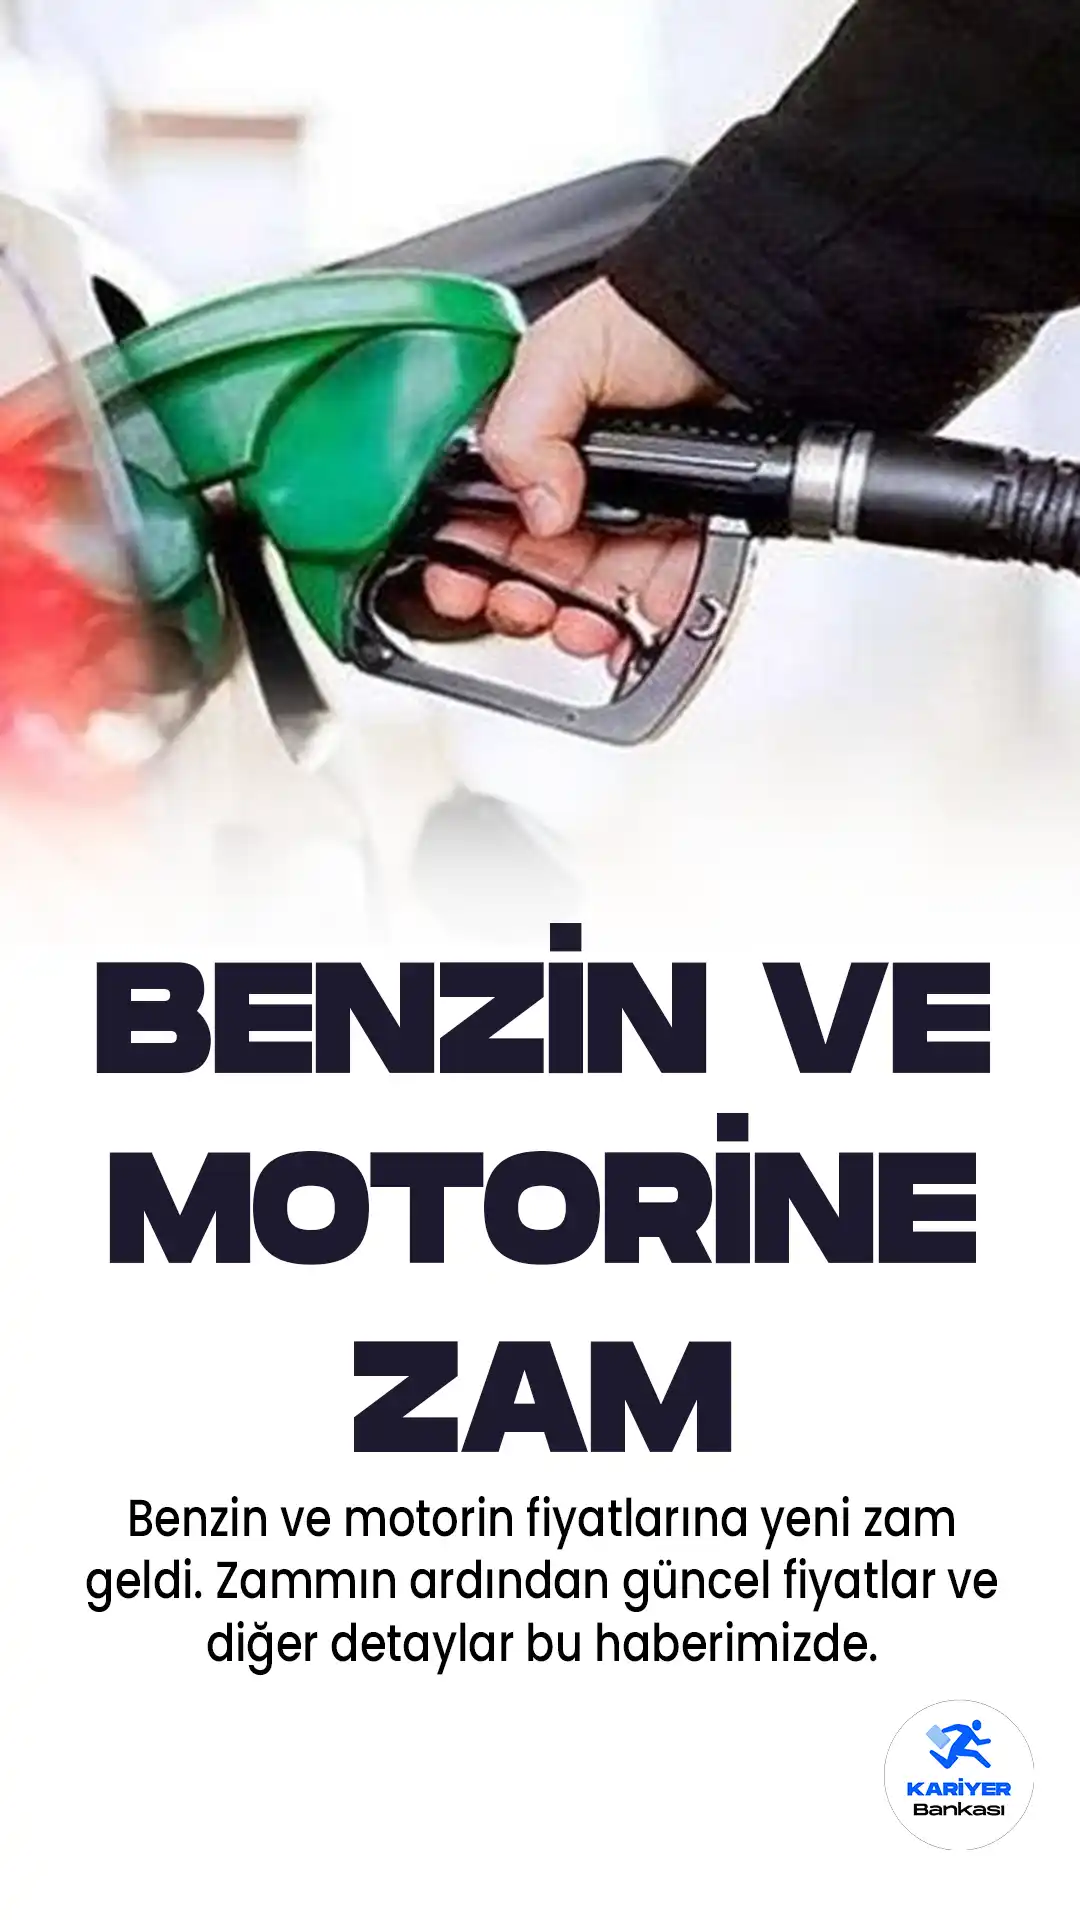 Benzin ve motorin fiyatlarına zam geldi. Gece yarısından itibaren geçerli olan kararla birlikte , benzinin litre fiyatına 2 lira 70 kuruş, motorin litre fiyatına 1 lira 37 kuruş artış yapıldı.